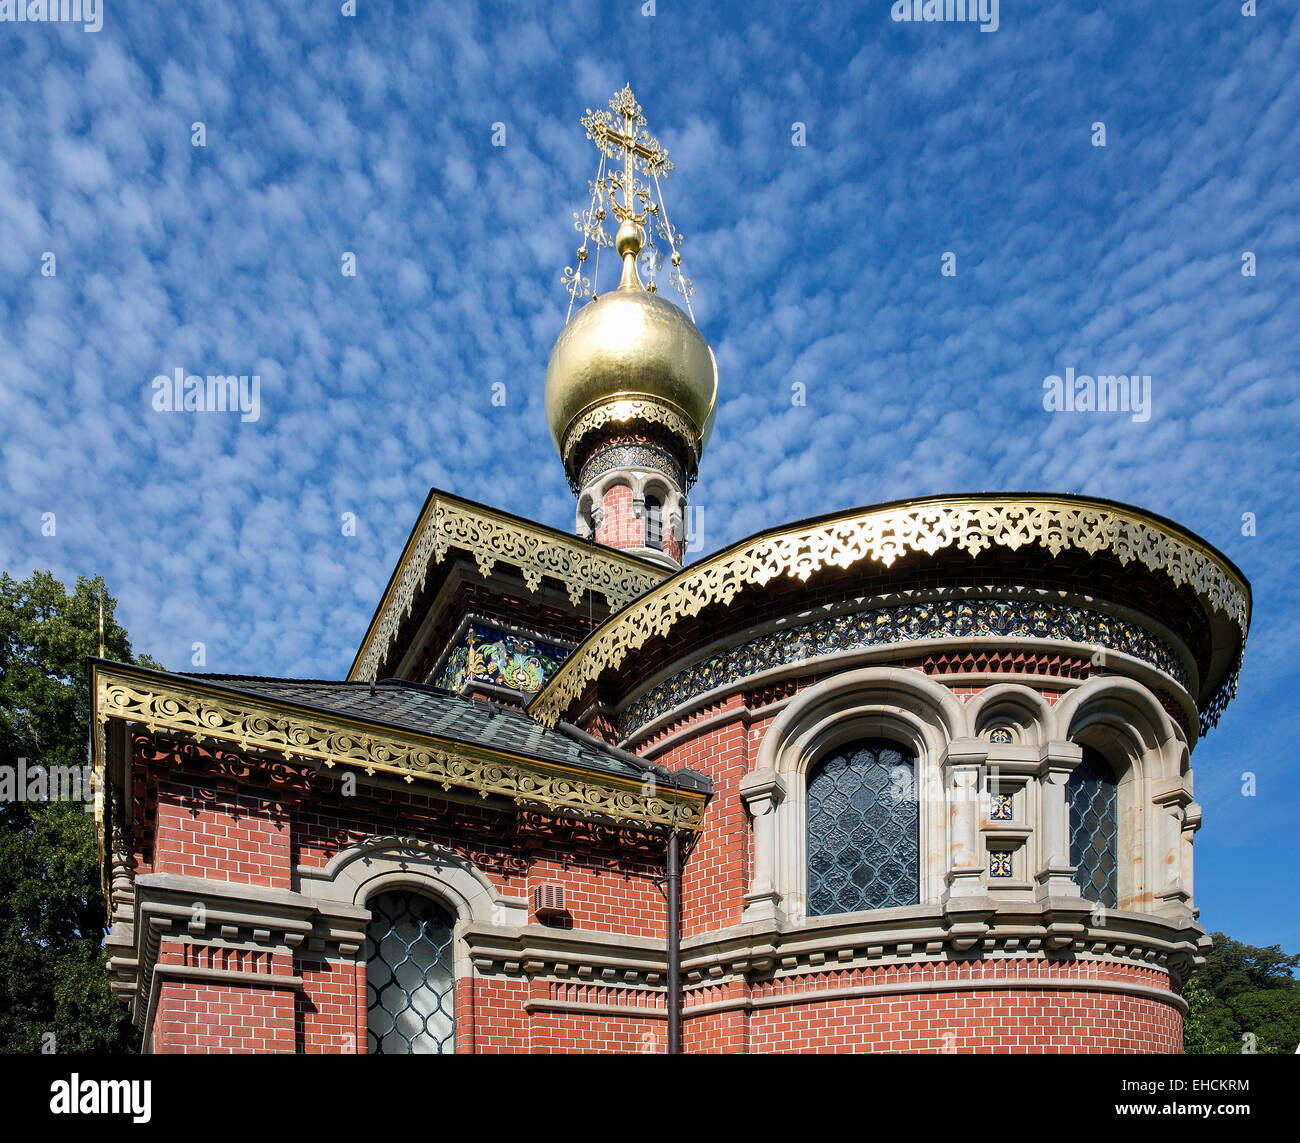 Russisch-orthodoxe Kirche Allerheiligen, russische Kapelle, Kurpark, Bad Homburg, Hessen, Deutschland Stockfoto